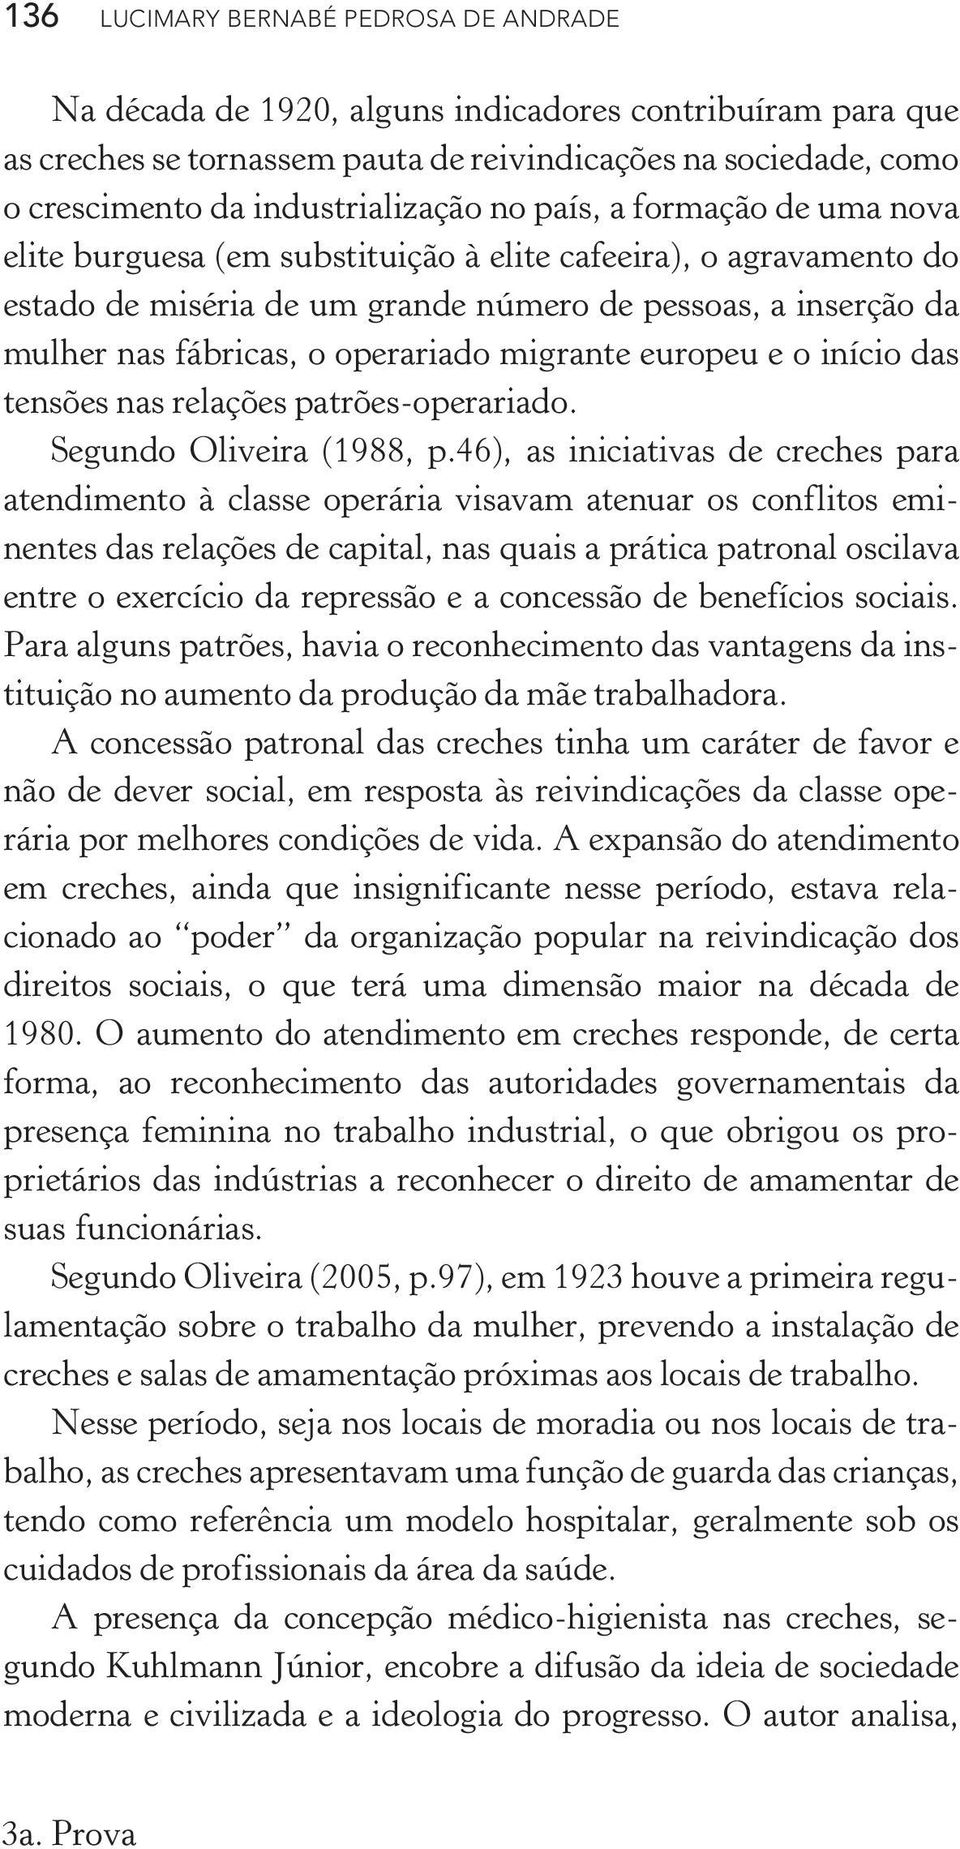 fábricas, o operariado migrante europeu e o início das tensões nas relações patrões-operariado. Segundo Oliveira (1988, p.